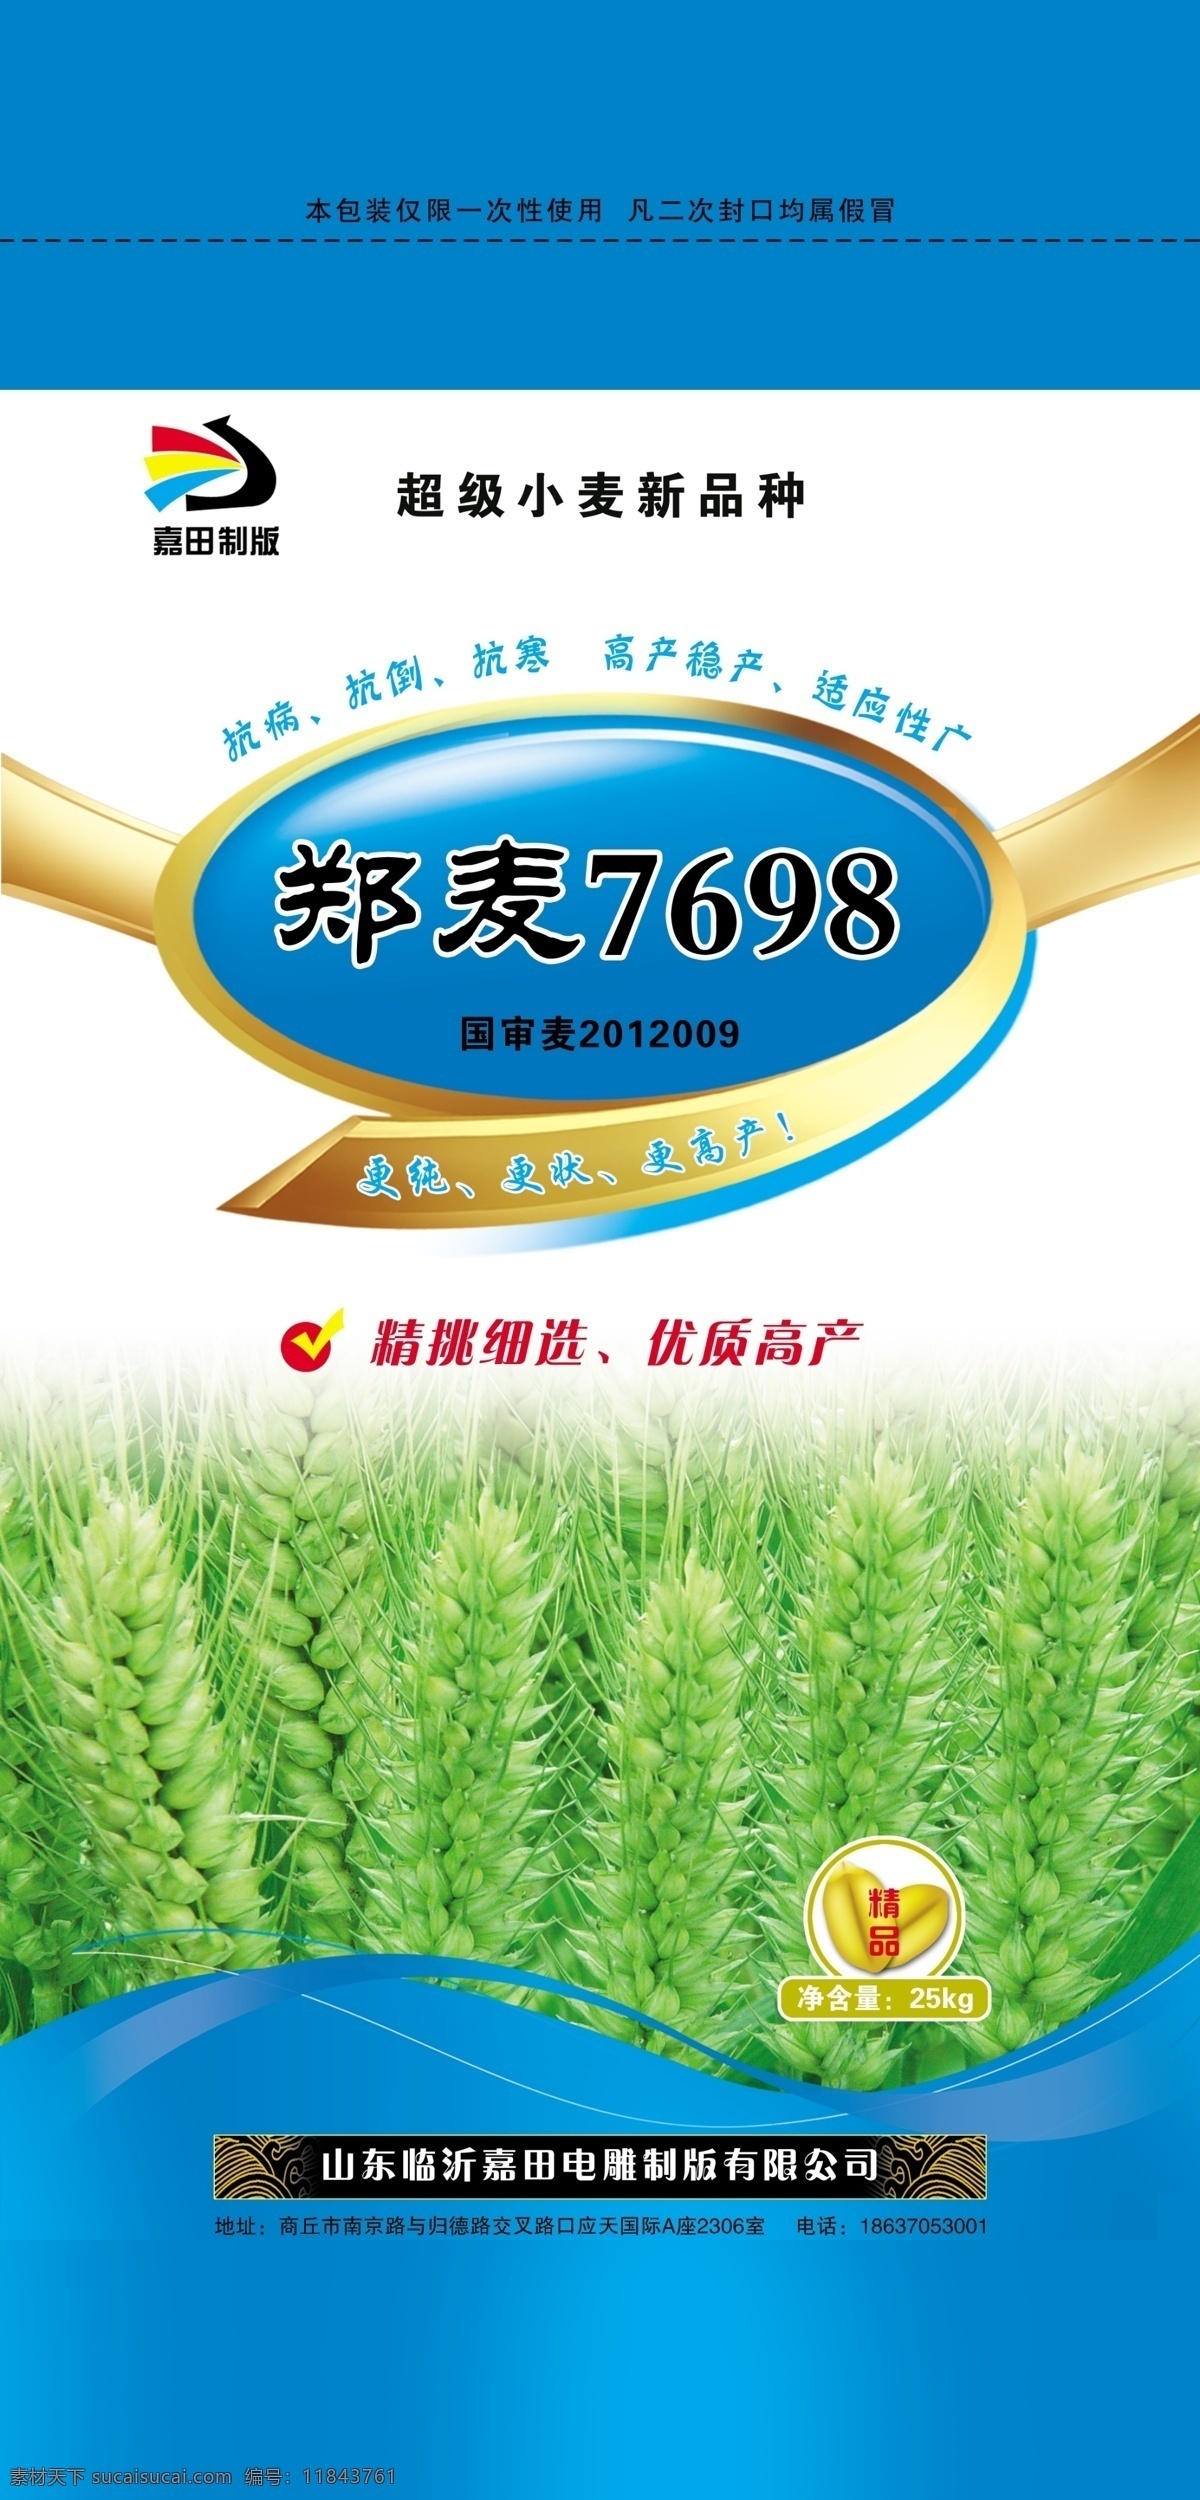 小麦包装 小麦 包装 种子 郑麦7698 麦穗 包装设计 白色